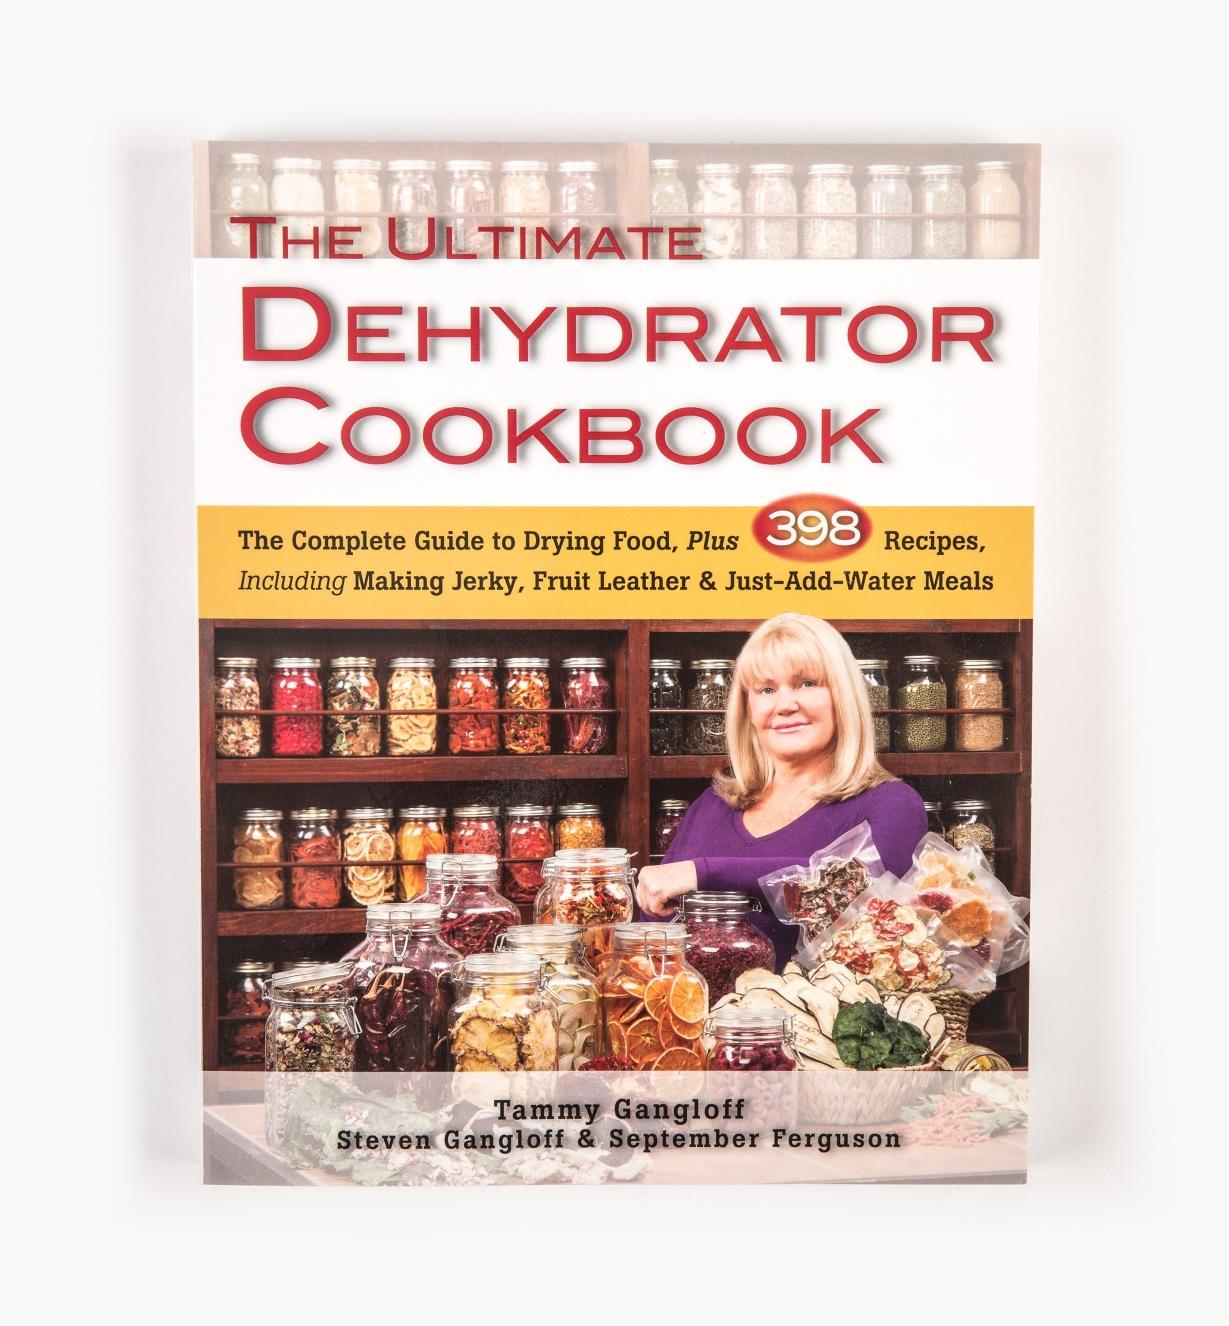 LA828 - The Ultimate Dehydrator Cookbook